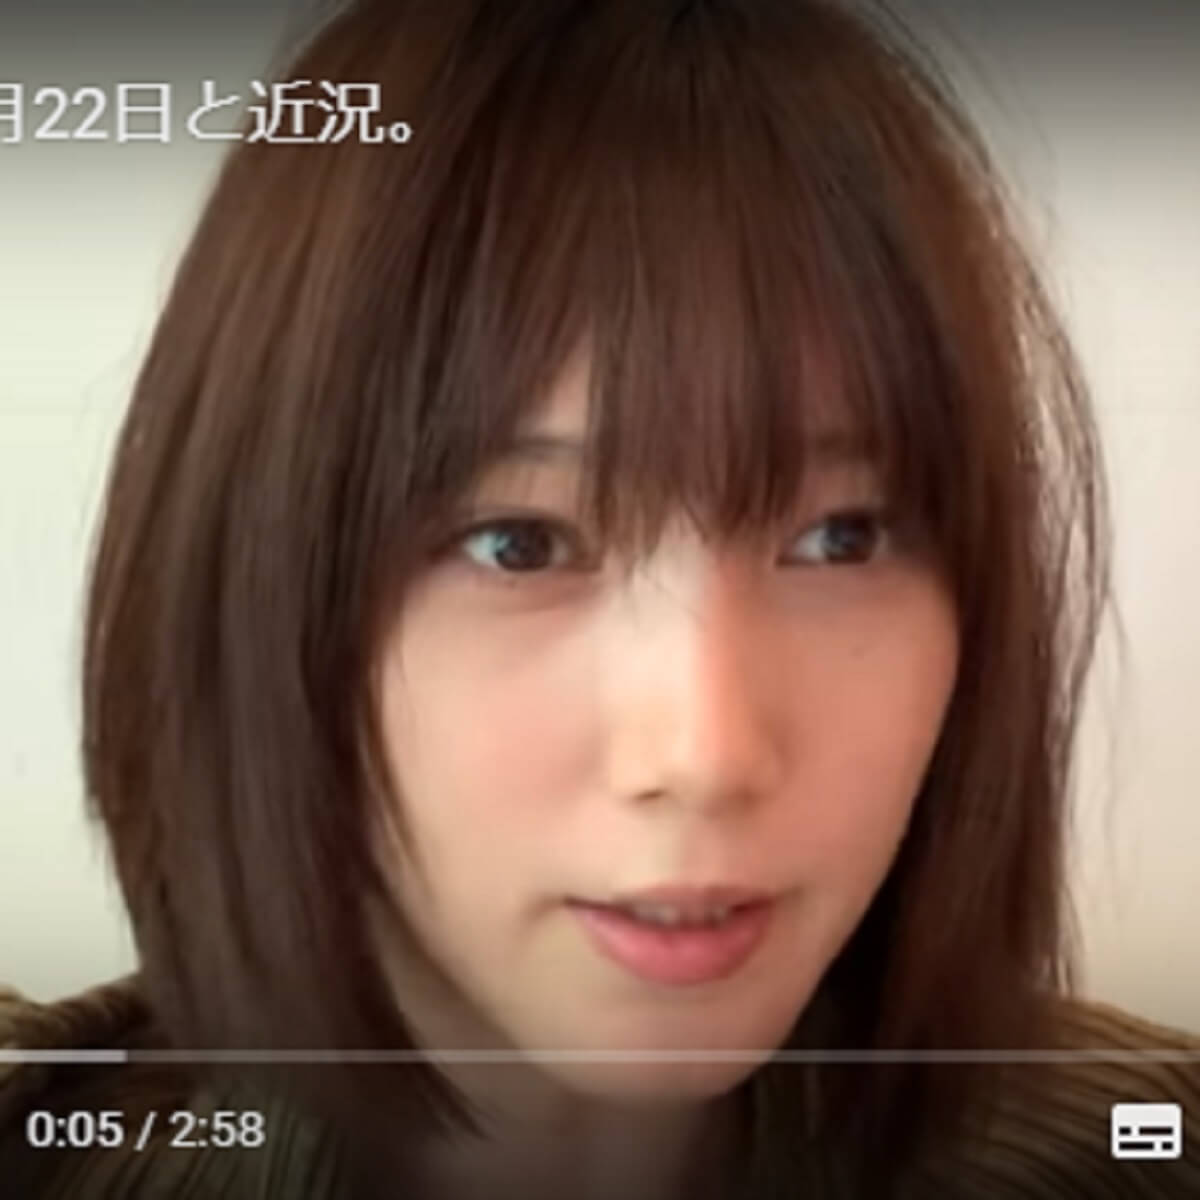 本田翼 あざとすぎる Youtubeで ボサボサ髪での初顔出し が物議に 日刊サイゾー